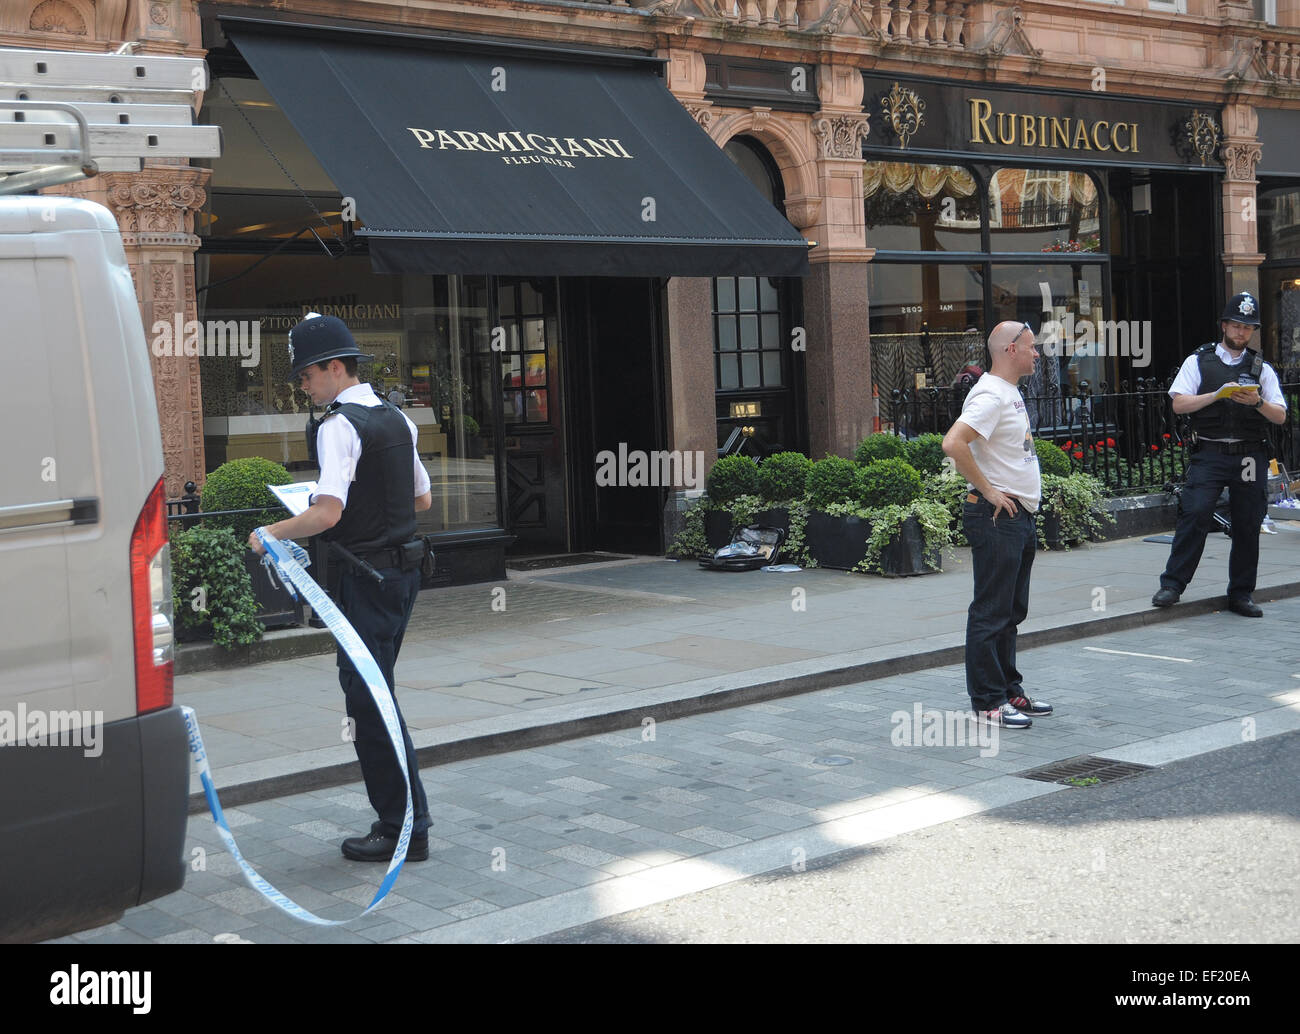 La polizia frequentare la scena di un fallito tentativo di rapina a orologiai di lusso Parmigiani sulla Mount Street a Mayfair offre: atmosfera dove: Londra, Regno Unito quando: 23 Lug 2014 Foto Stock